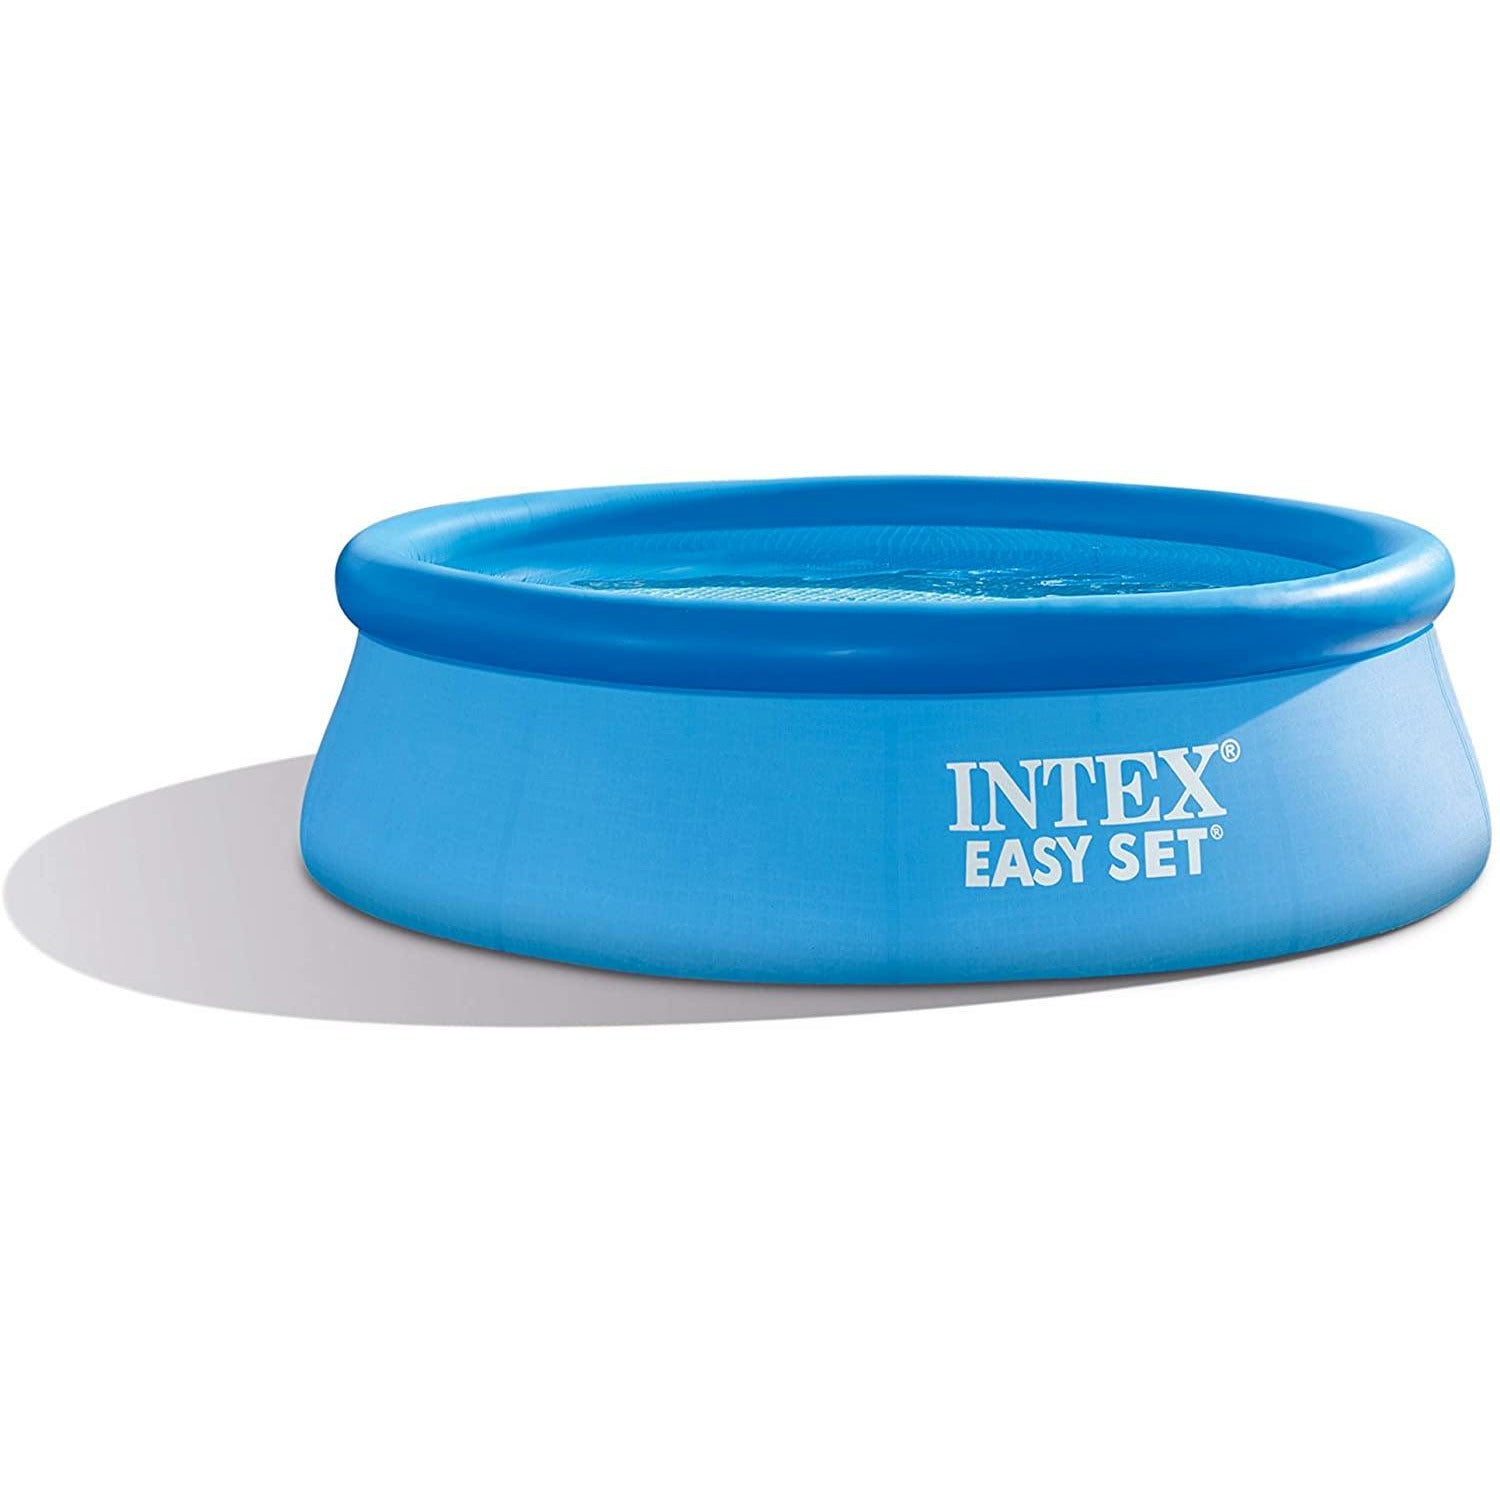 Intex Easy Set Pool 8x30 - Pelican Shops